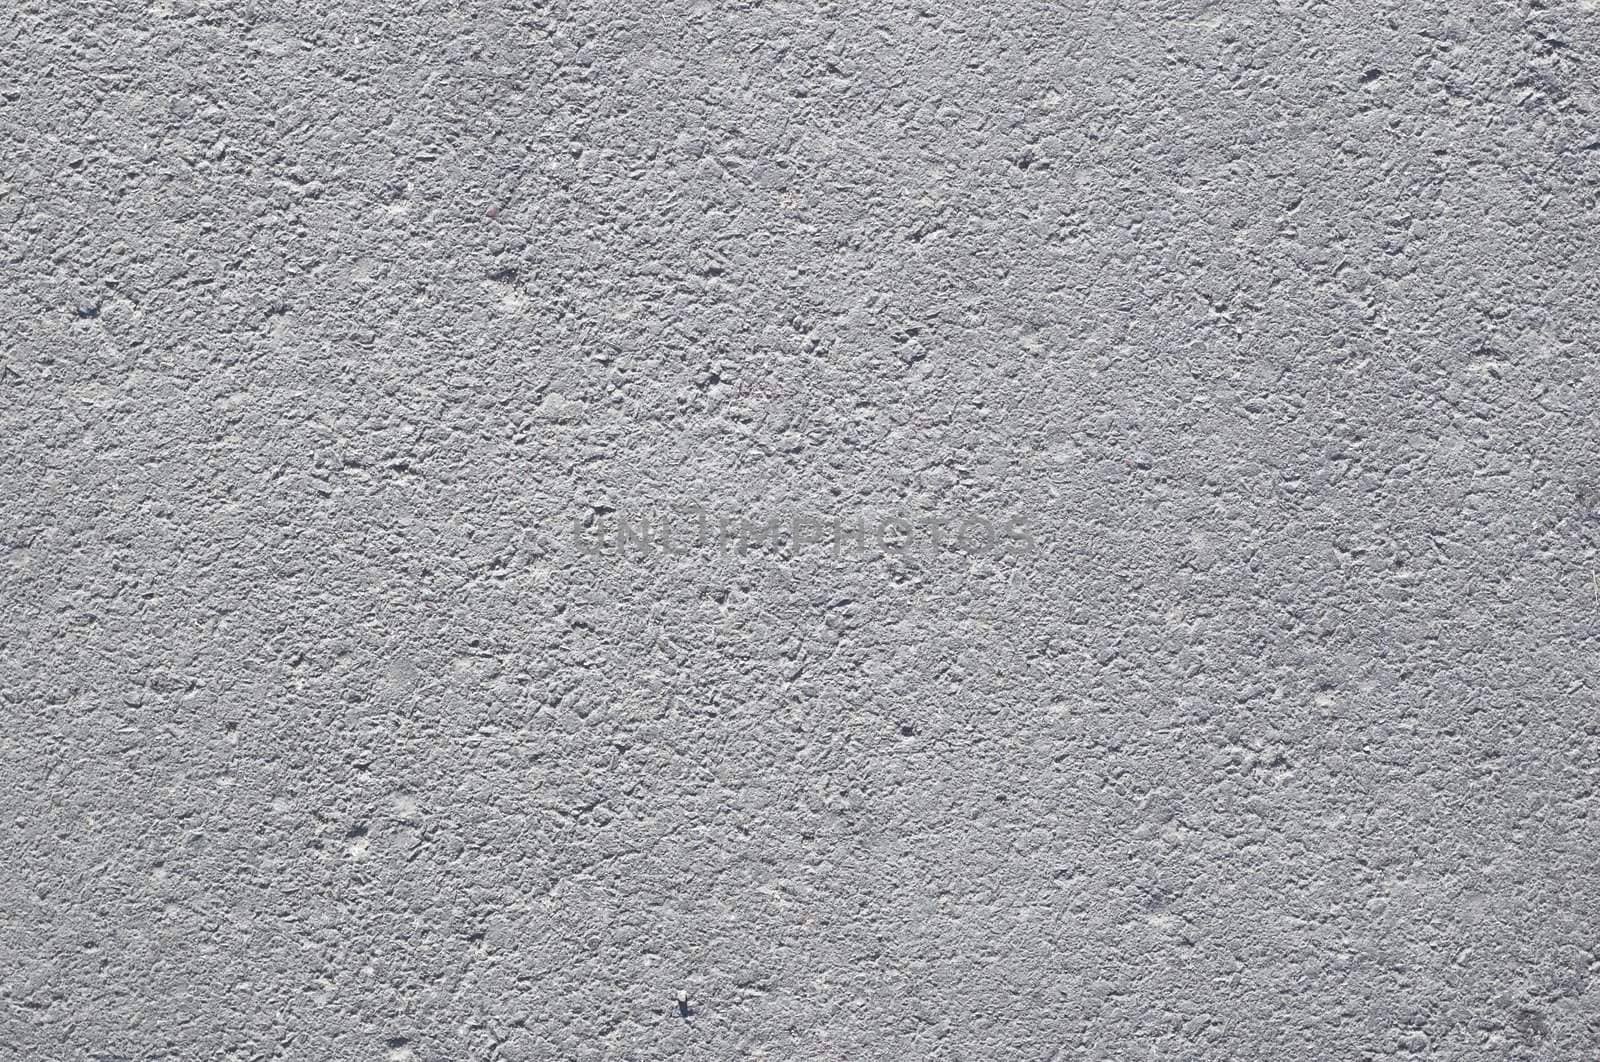 dusty asphalt grunge texture background #1